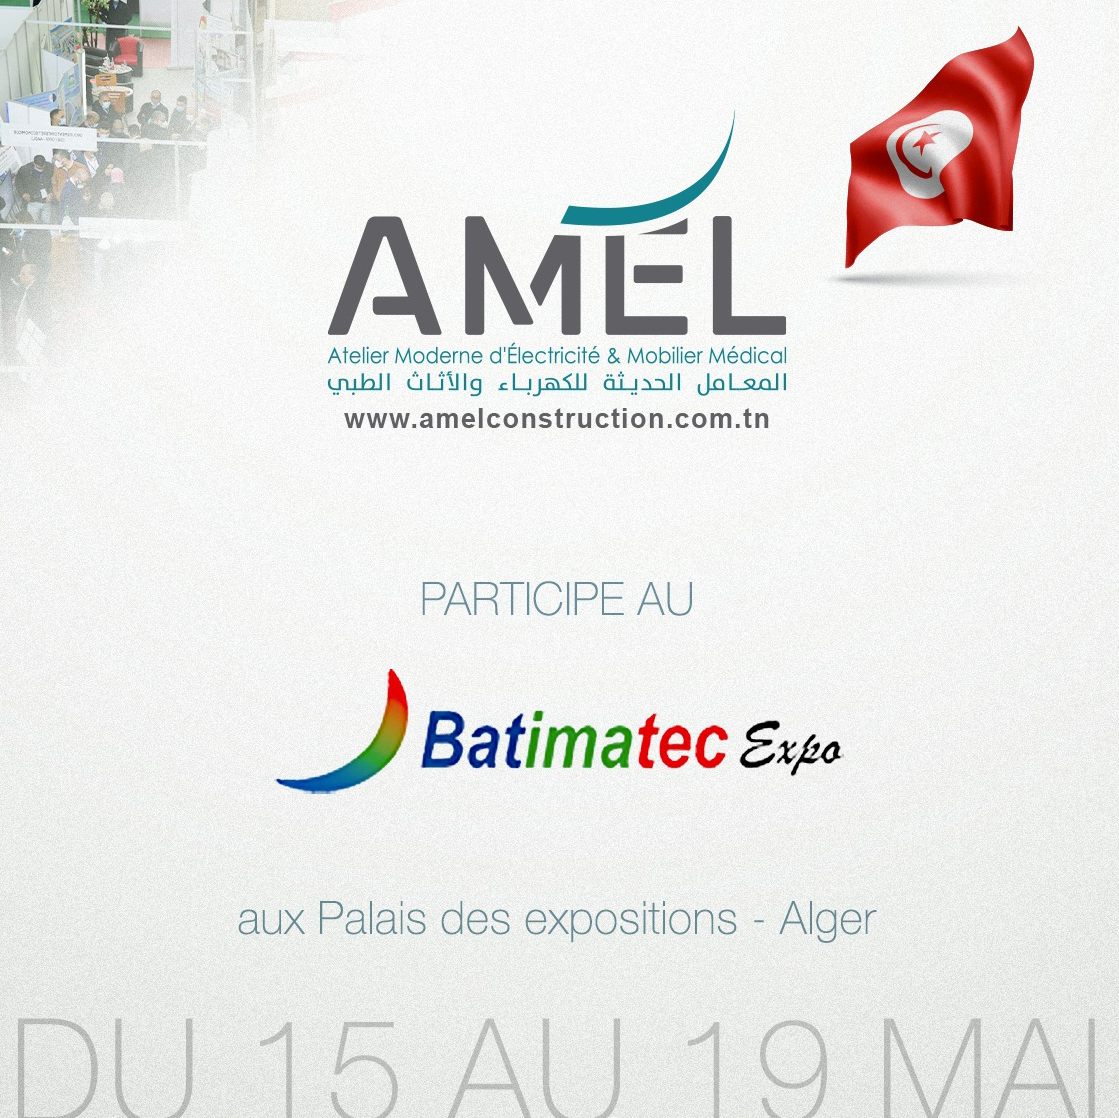 AMEL CONSTRUCTION À BATIMATEC EXPO – ALGER